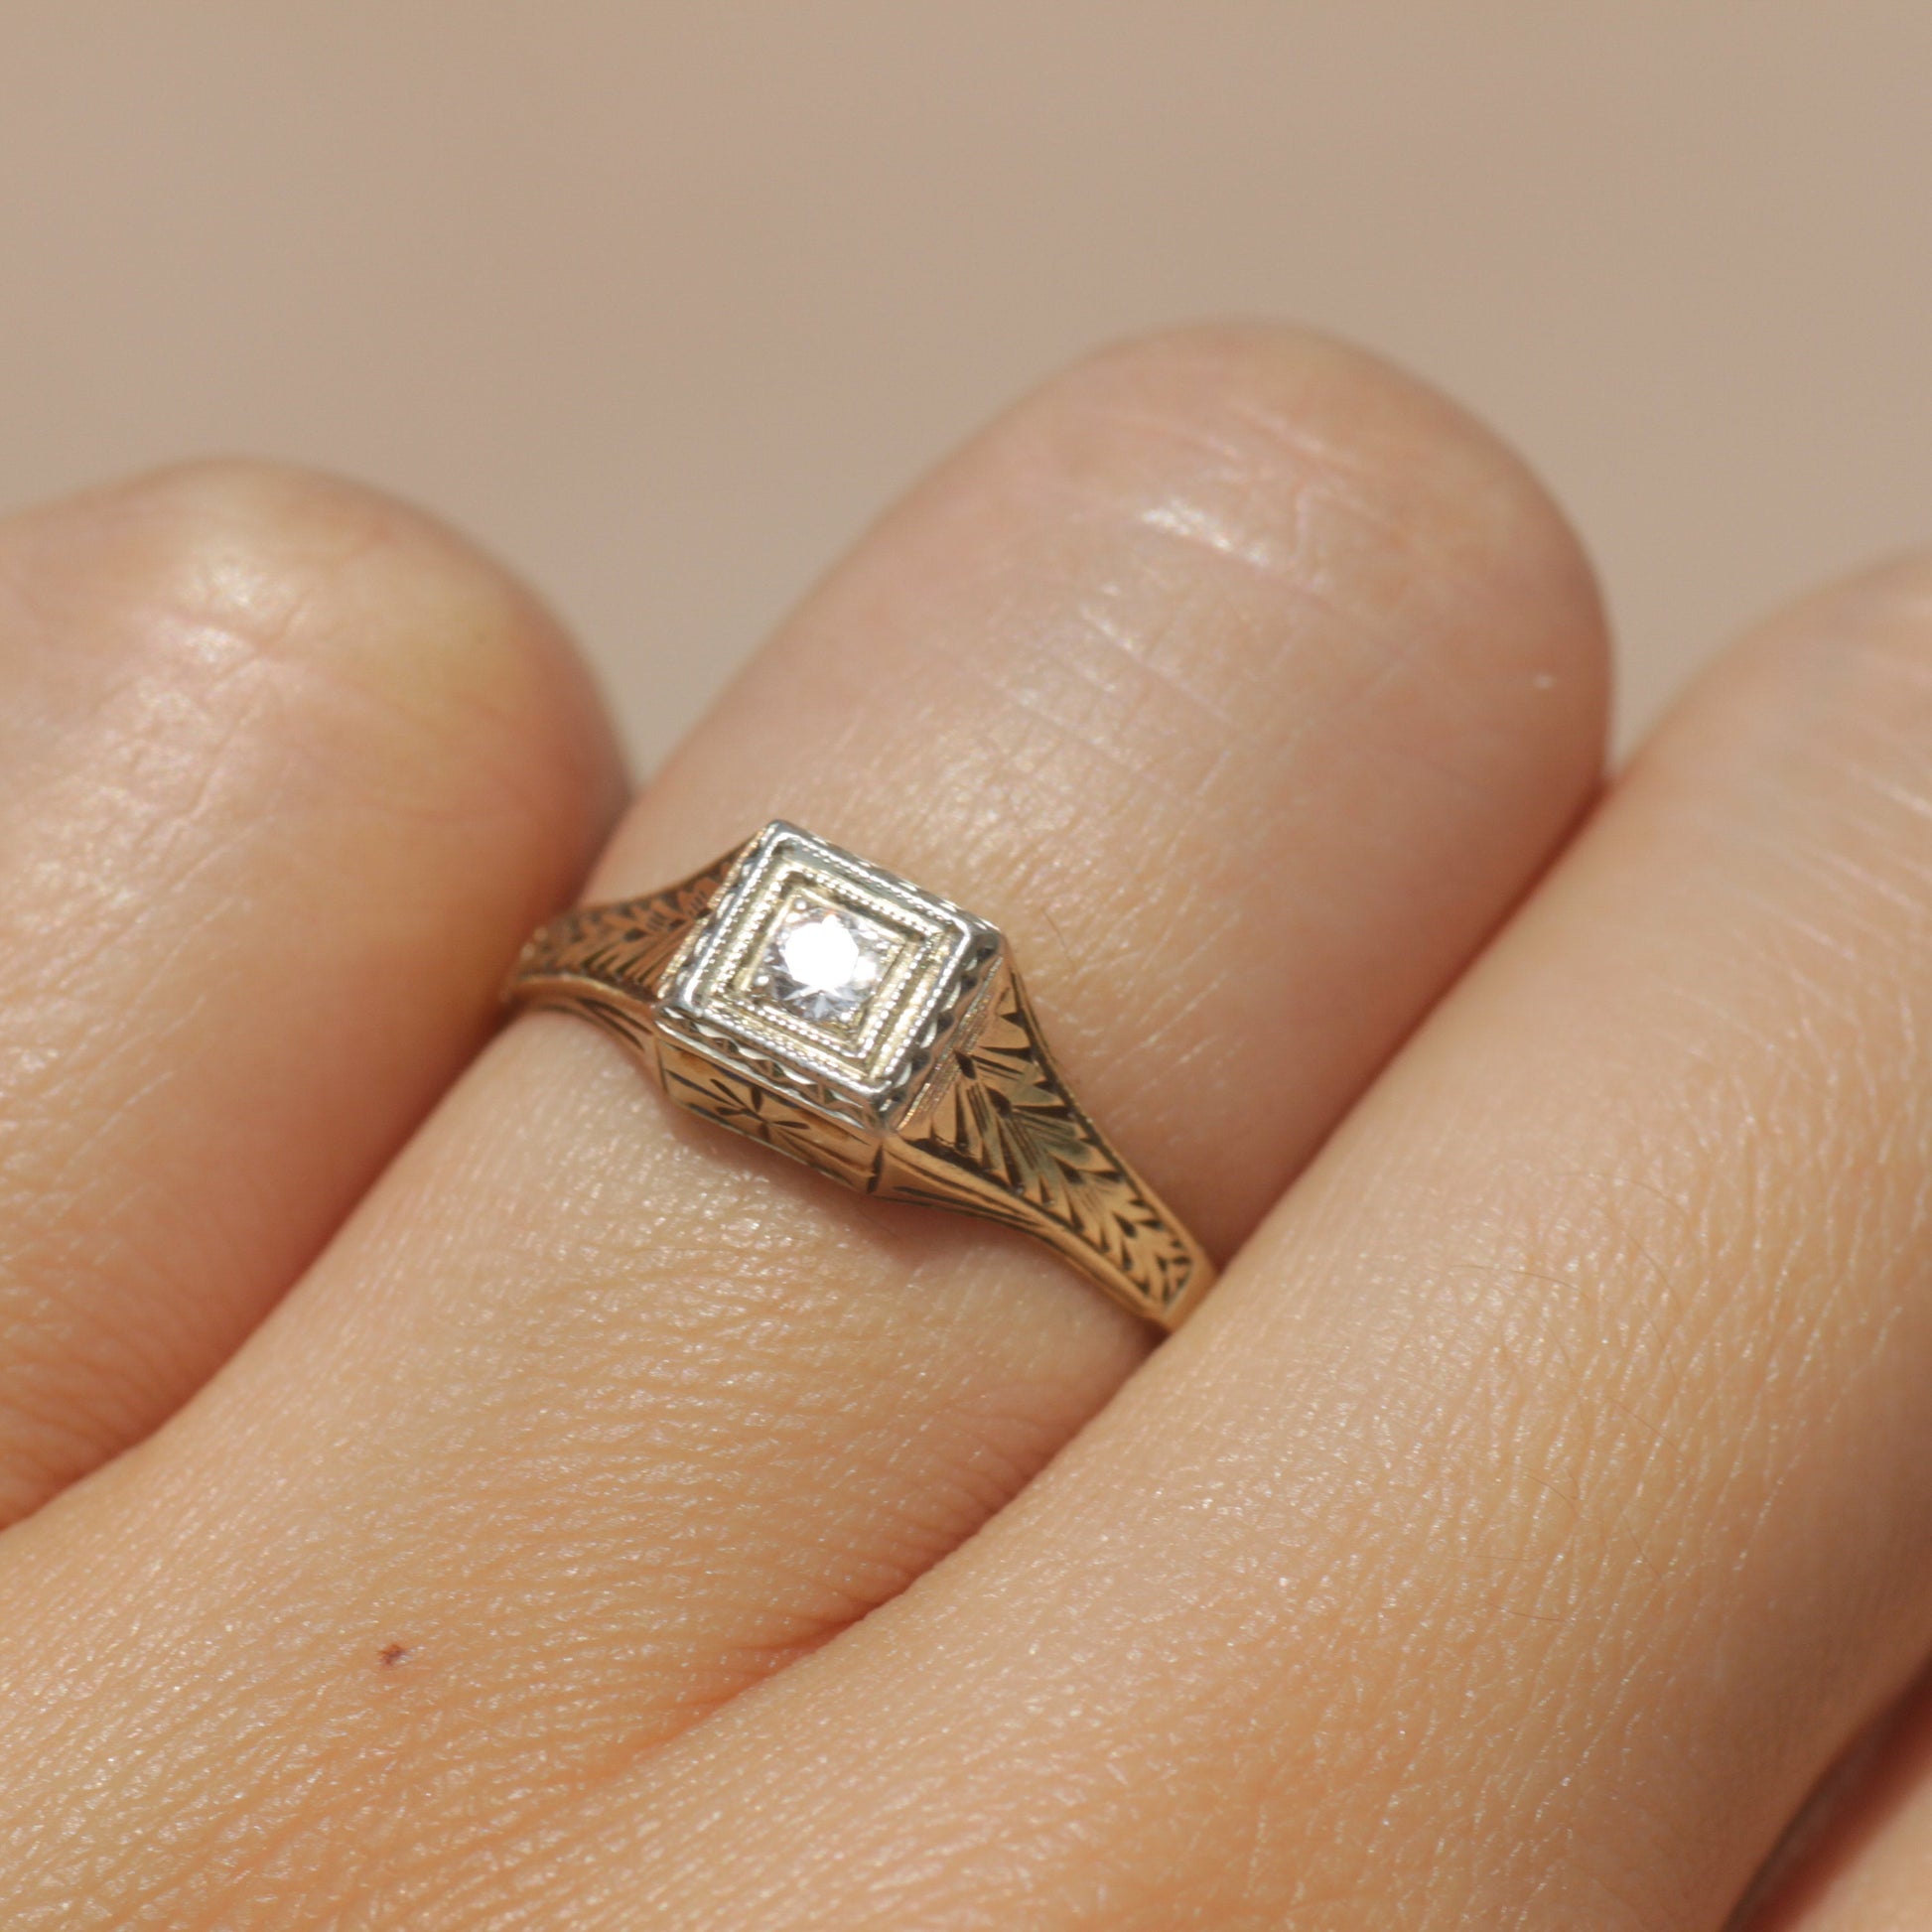 Antique Art Deco Diamond Ring 14k Gold & Platinum Sz 5 1/4